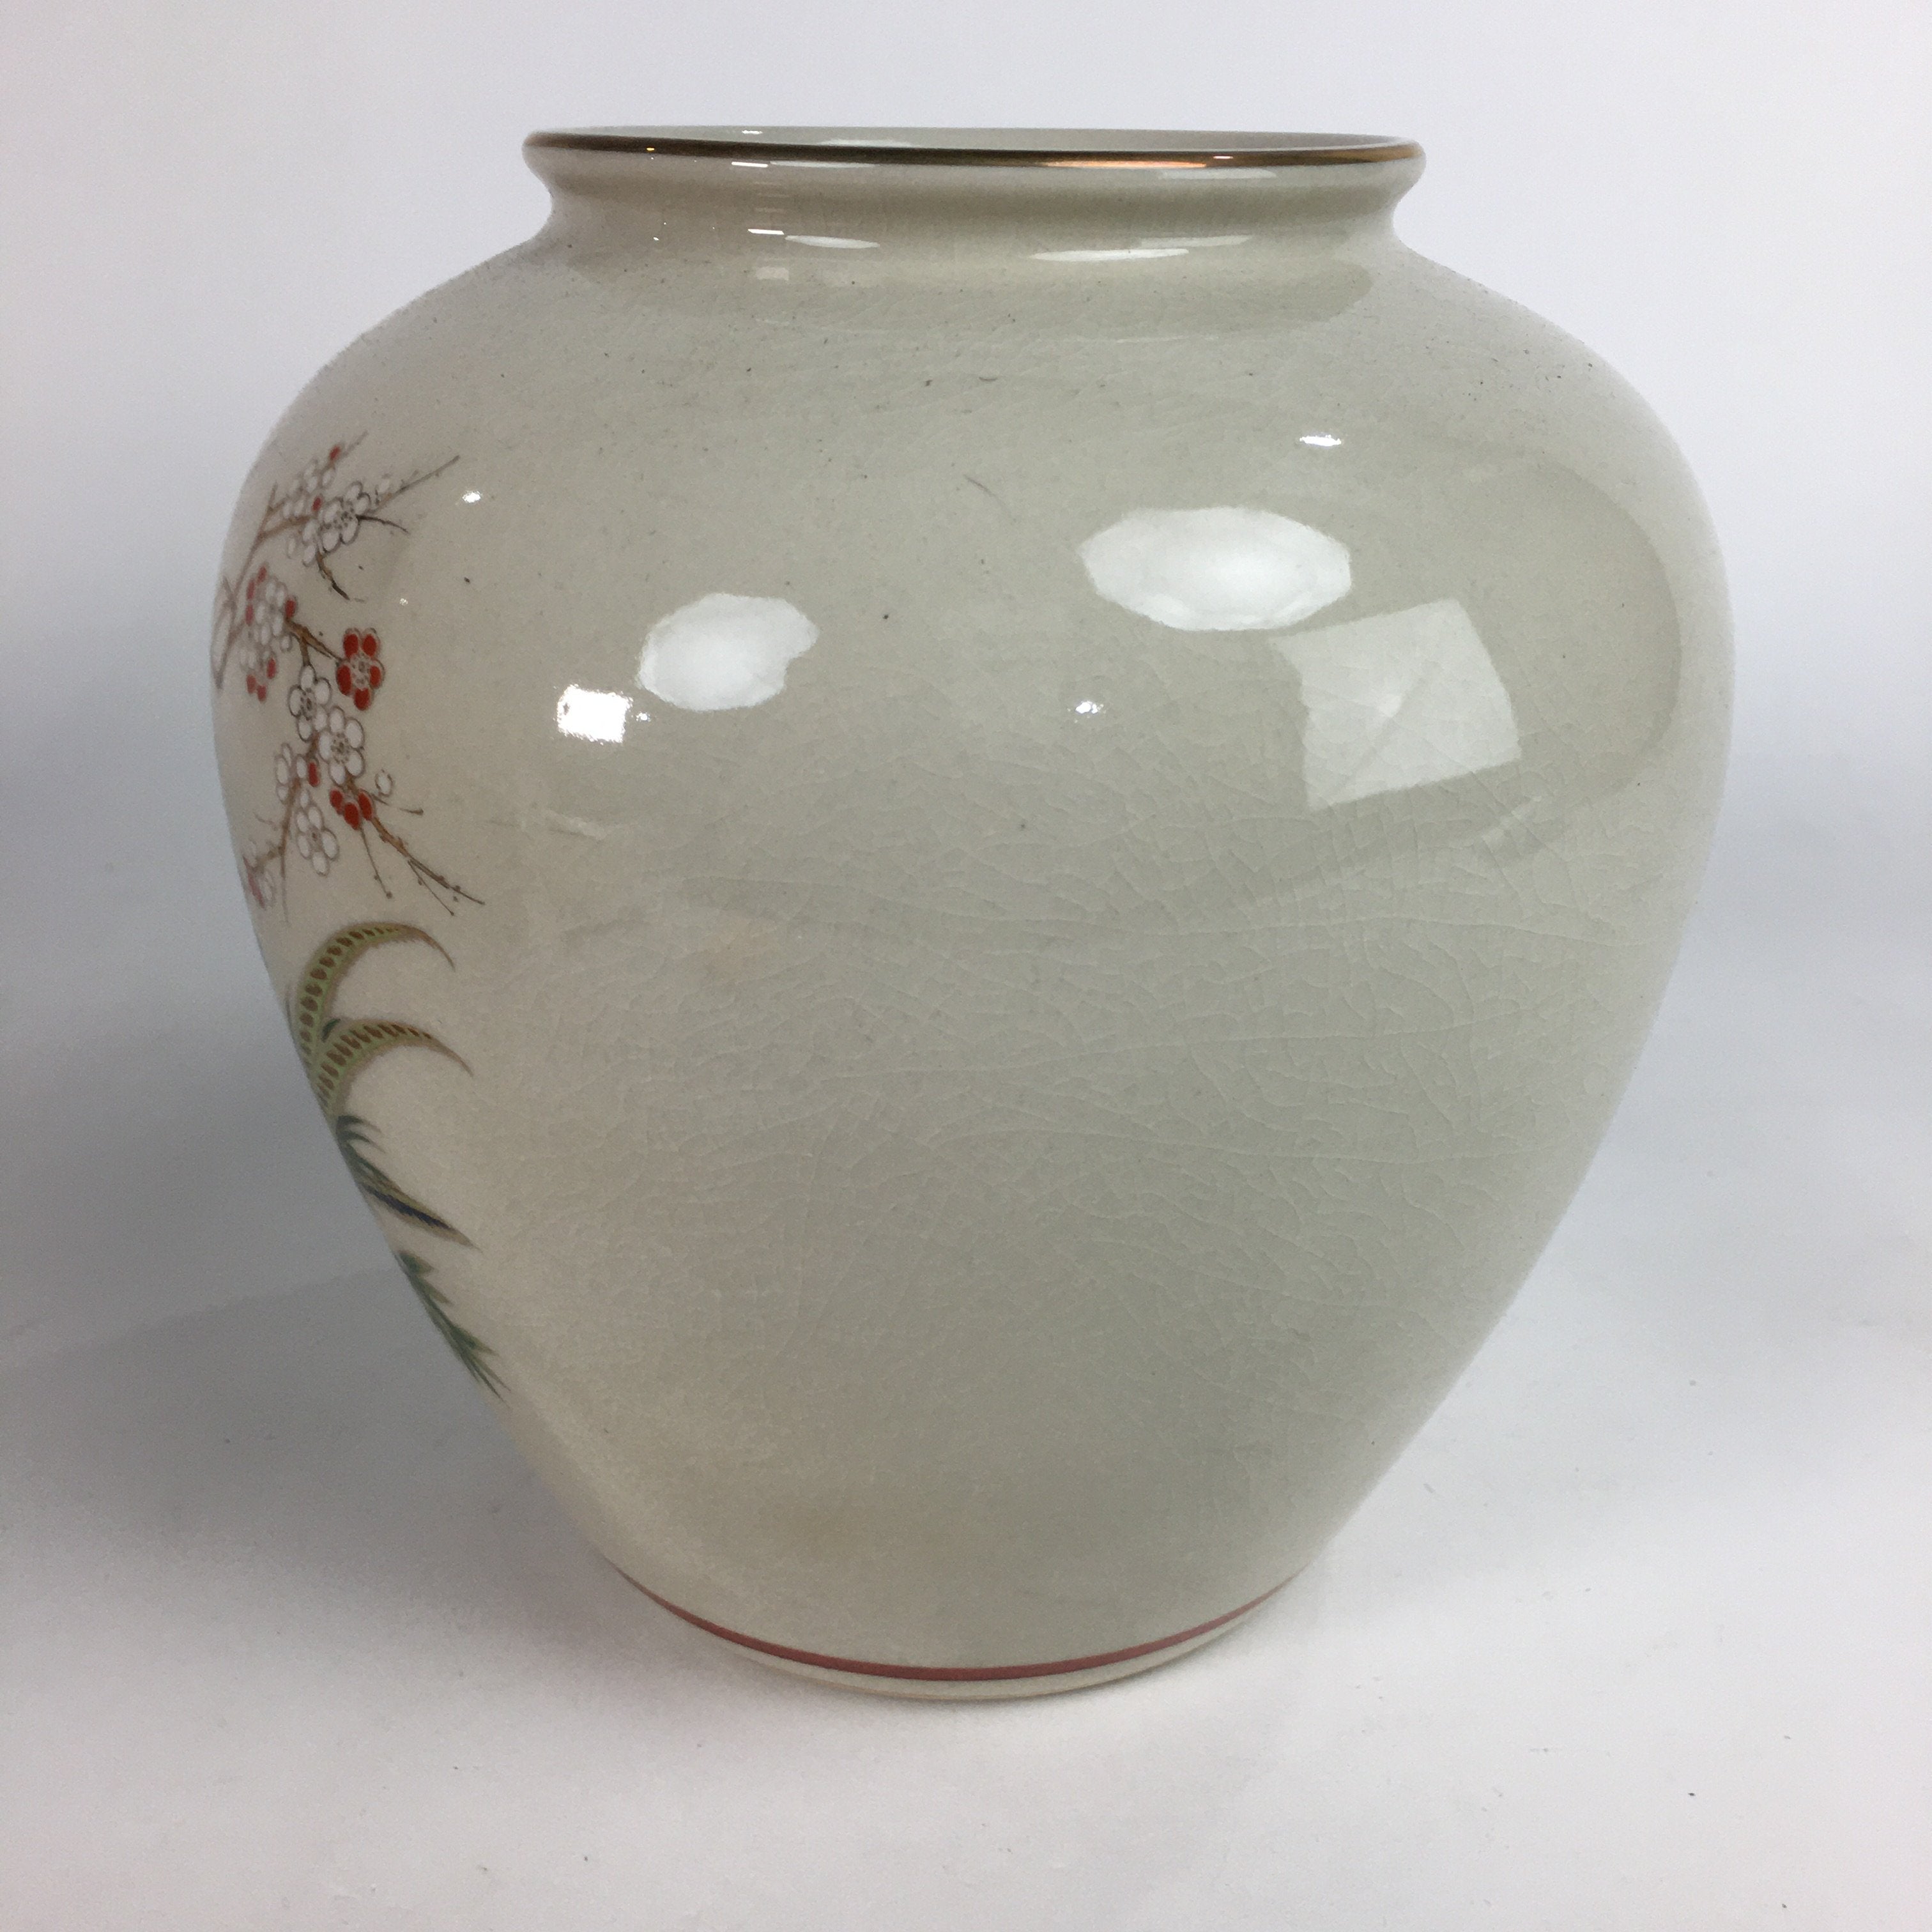 Japanese Ceramic Flower Vase Kutani ware Vtg Kabin Ikebana Arrangement FV933